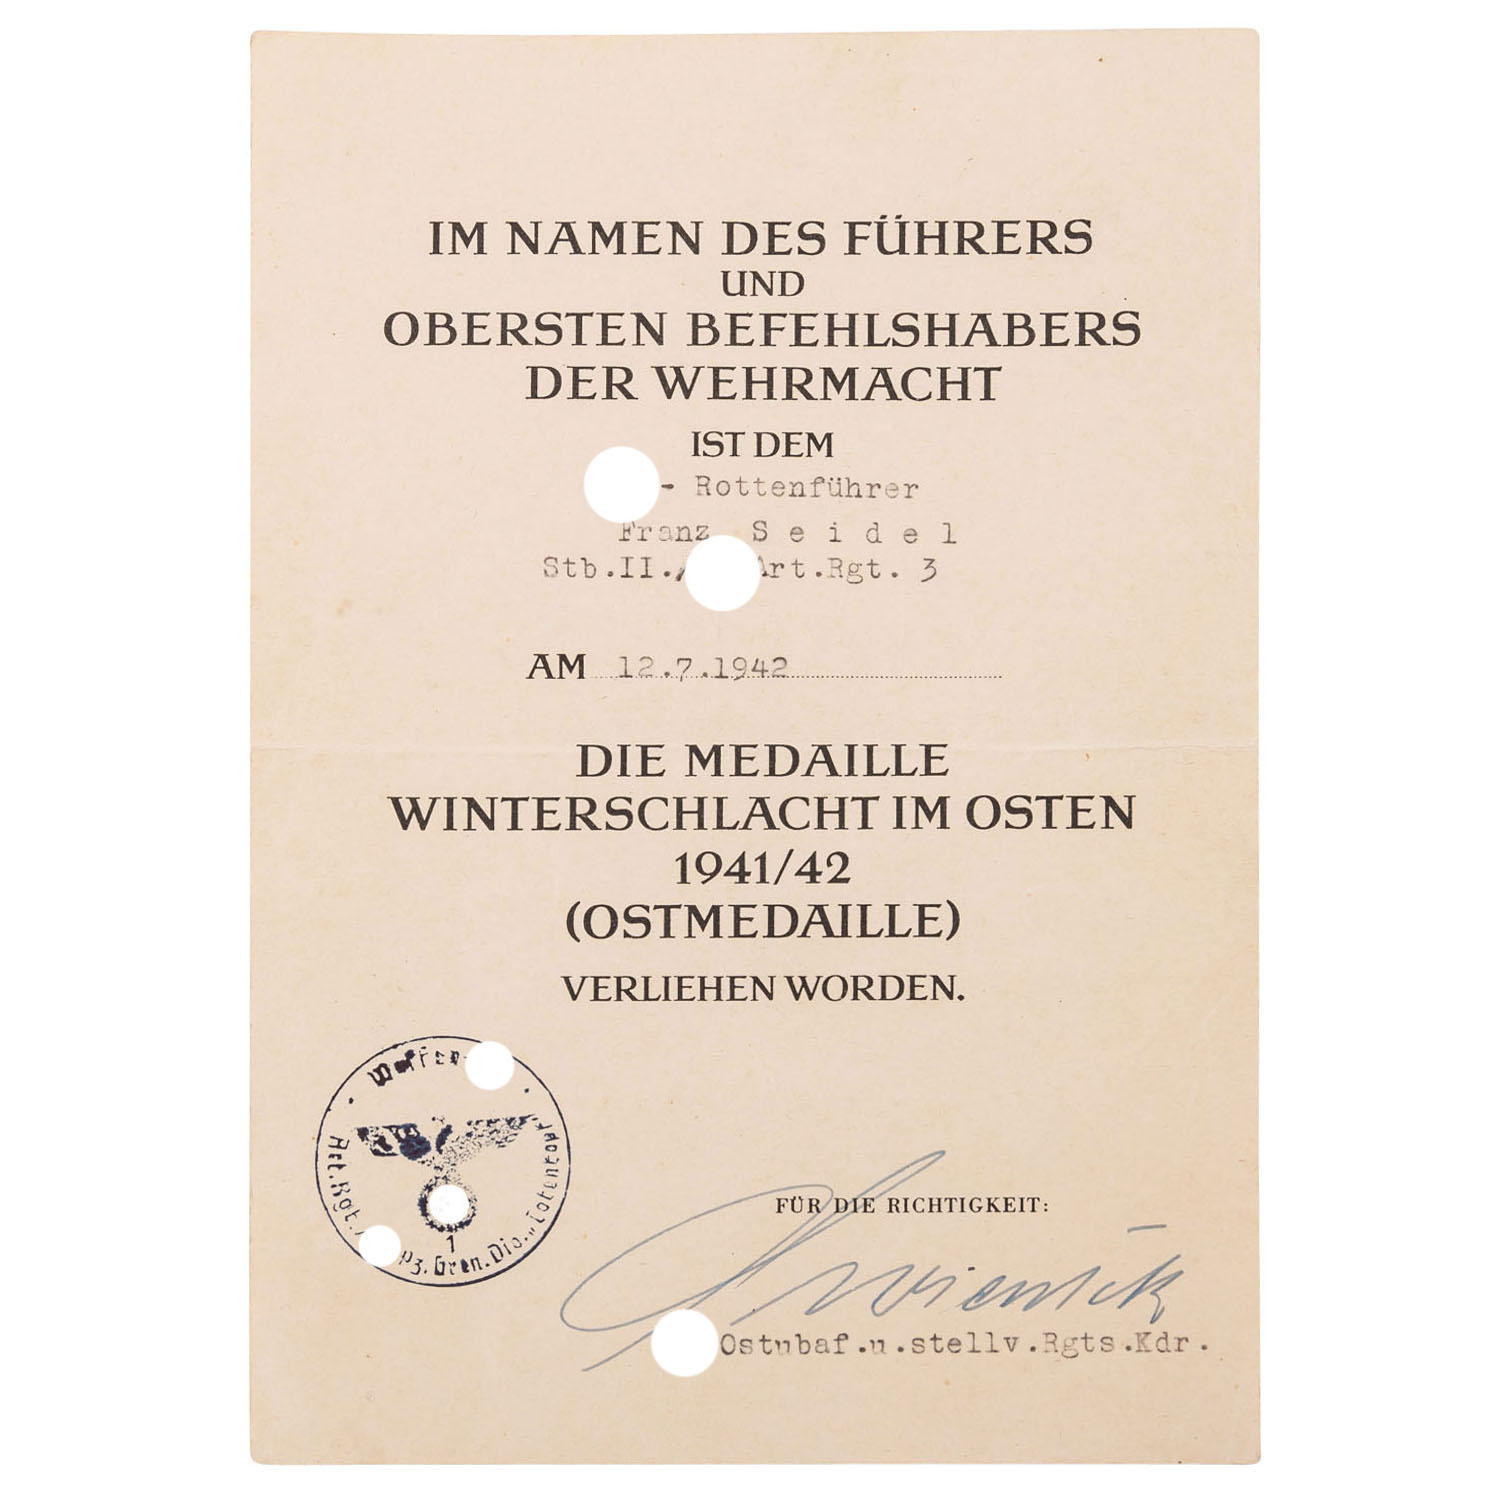 Deutsches Reich 1933-1945 - Verleihungsurkunde